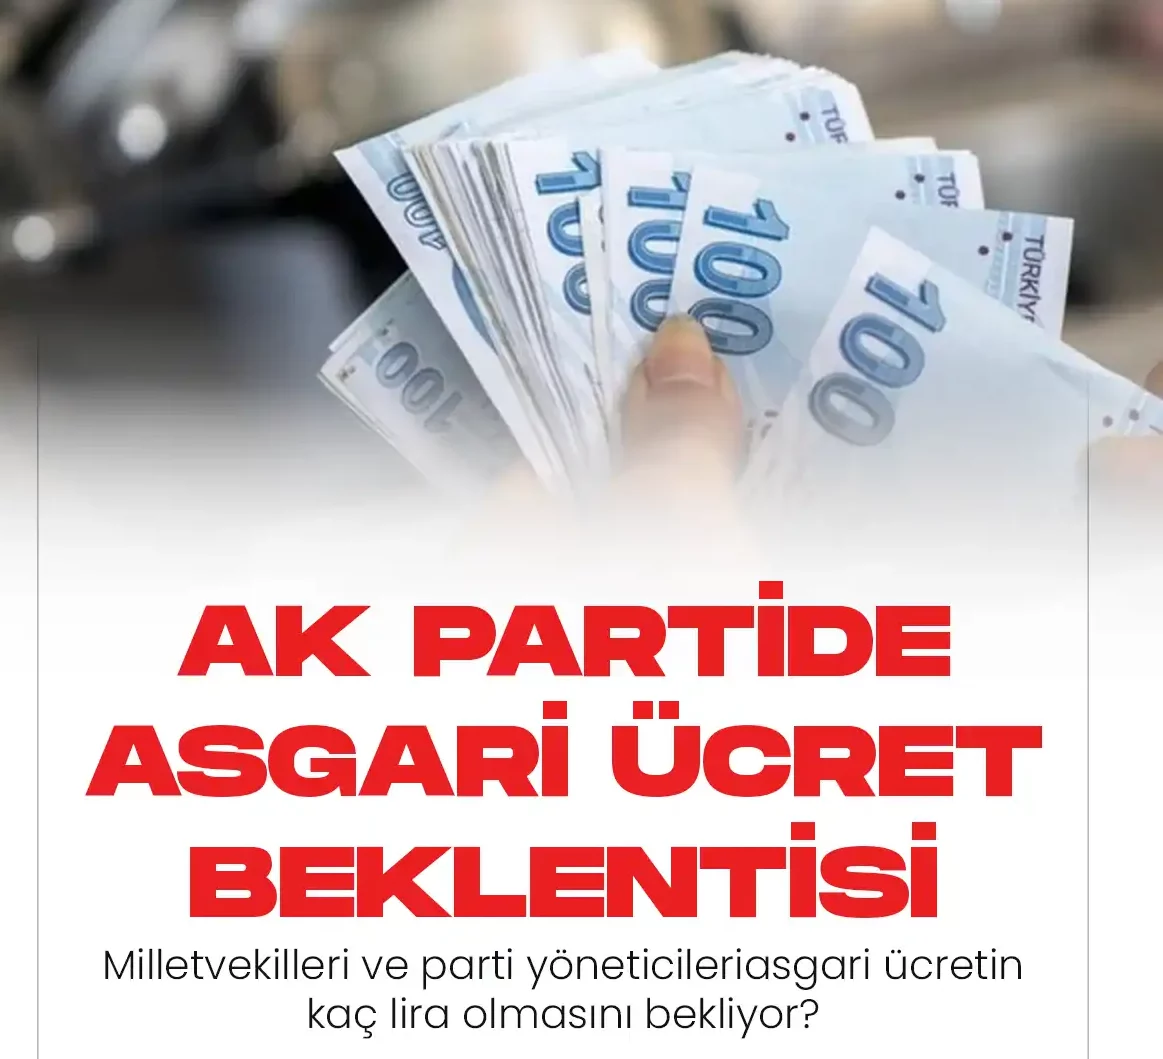 Türkiye Gazetesi'nden Yücel Kayaoğlu'nun haberine göre; Türkiye Büyük Millet Meclisi Genel Kurulunda devam eden 2023 bütçe görüşmelerinin ana gündem maddelerinden birisi de asgari ücret.